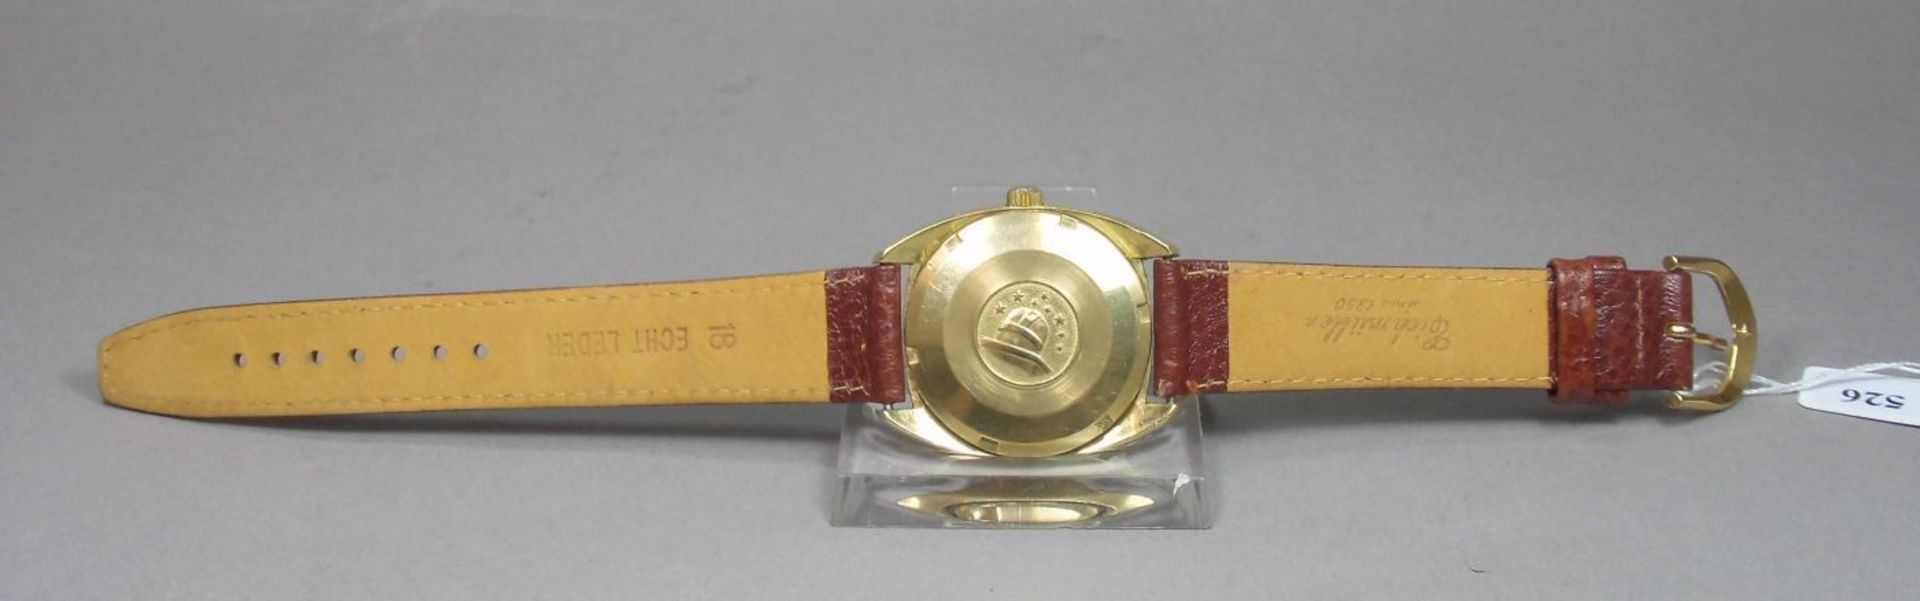 VINTAGE ARMBANDUHR: OMEGA CONSTELLATION / wristwatch, Herstellungsjahr 1968, Automatik-Uhr, - Image 7 of 11